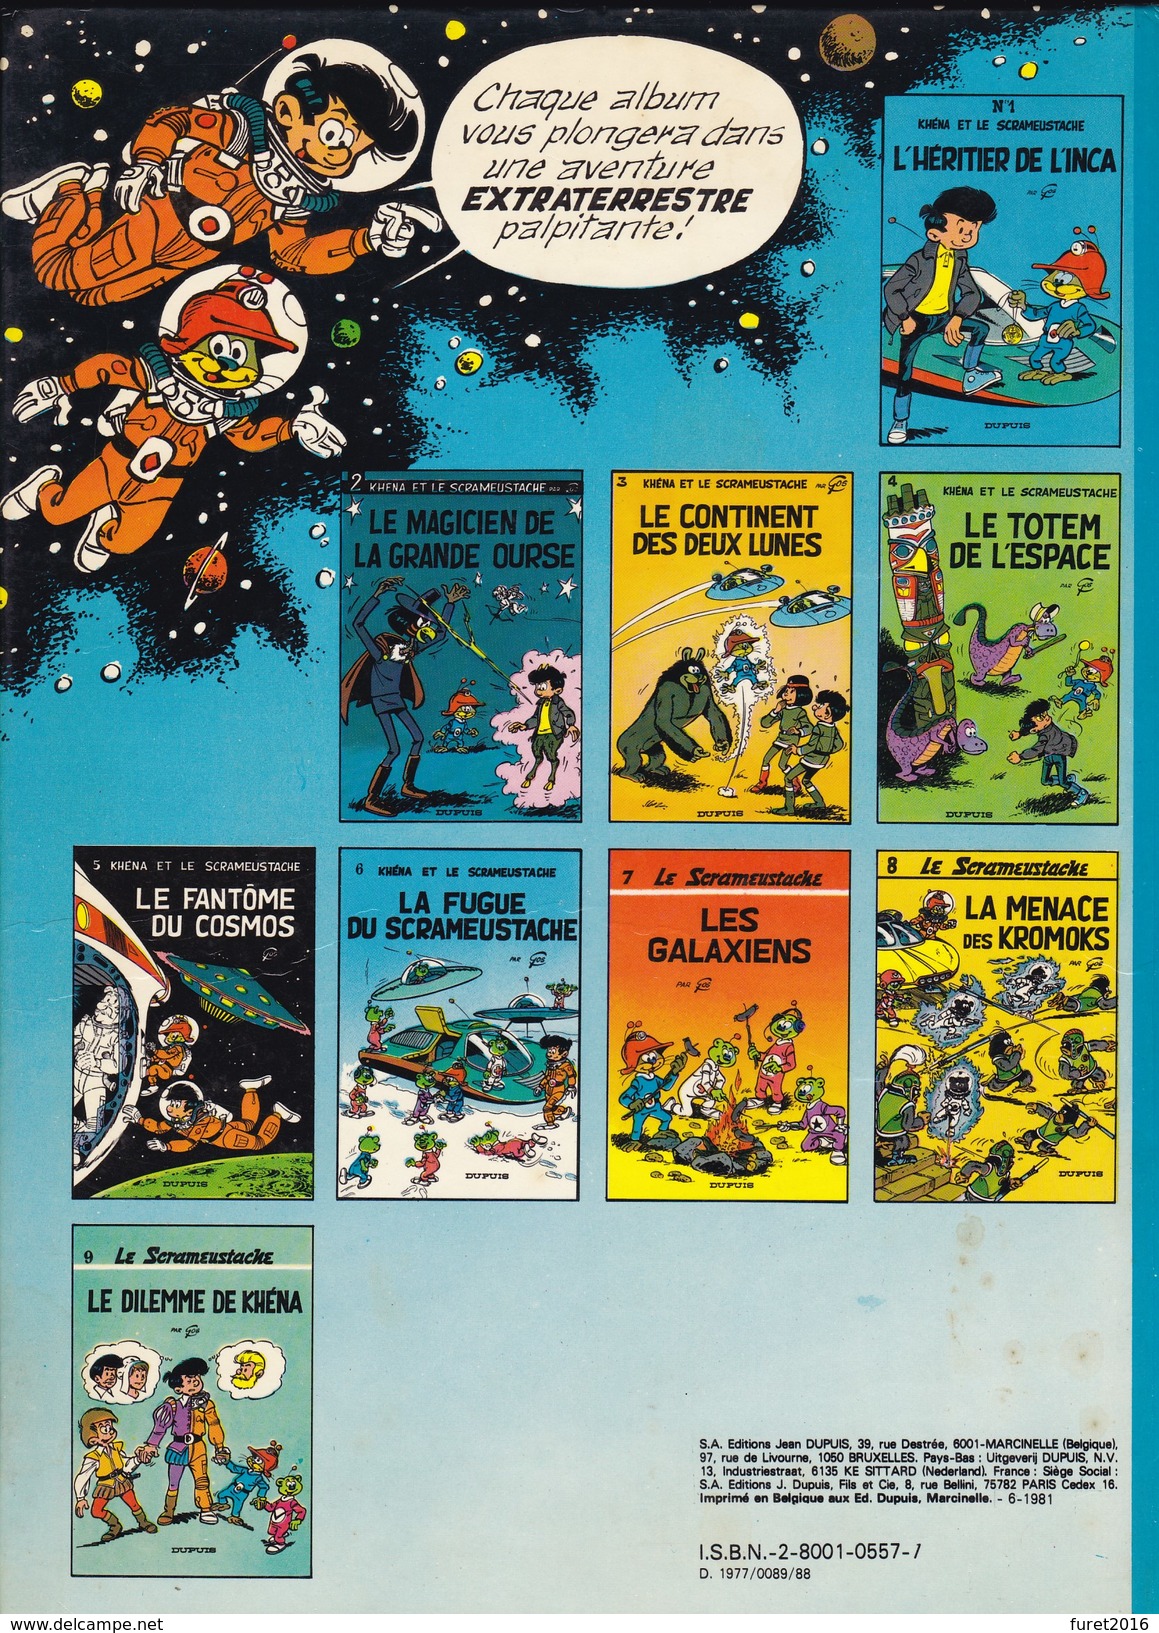 5 KHENA ET LE SCRAMEUSTACHE Le Fantome Du Cosmos Par Gos 1977 - Scrameustache, Le